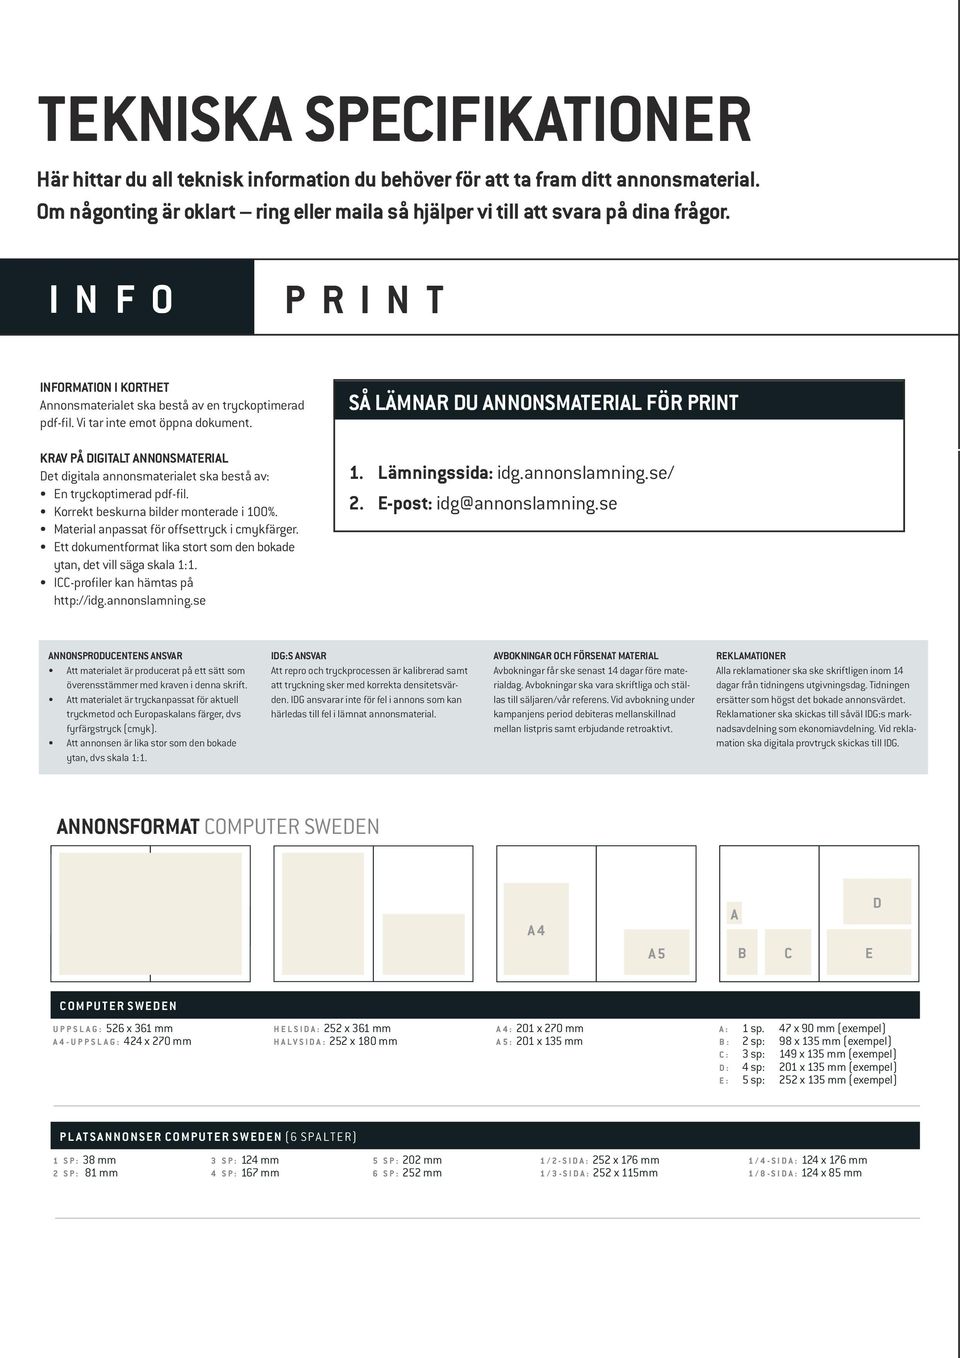 Krav på digitalt annonsmaterial Det digitala annonsmaterialet ska bestå av: En tryckoptimerad pdf-fil. Korrekt beskurna bilder monterade i 100%. Material anpassat för offsettryck i cmykfärger.